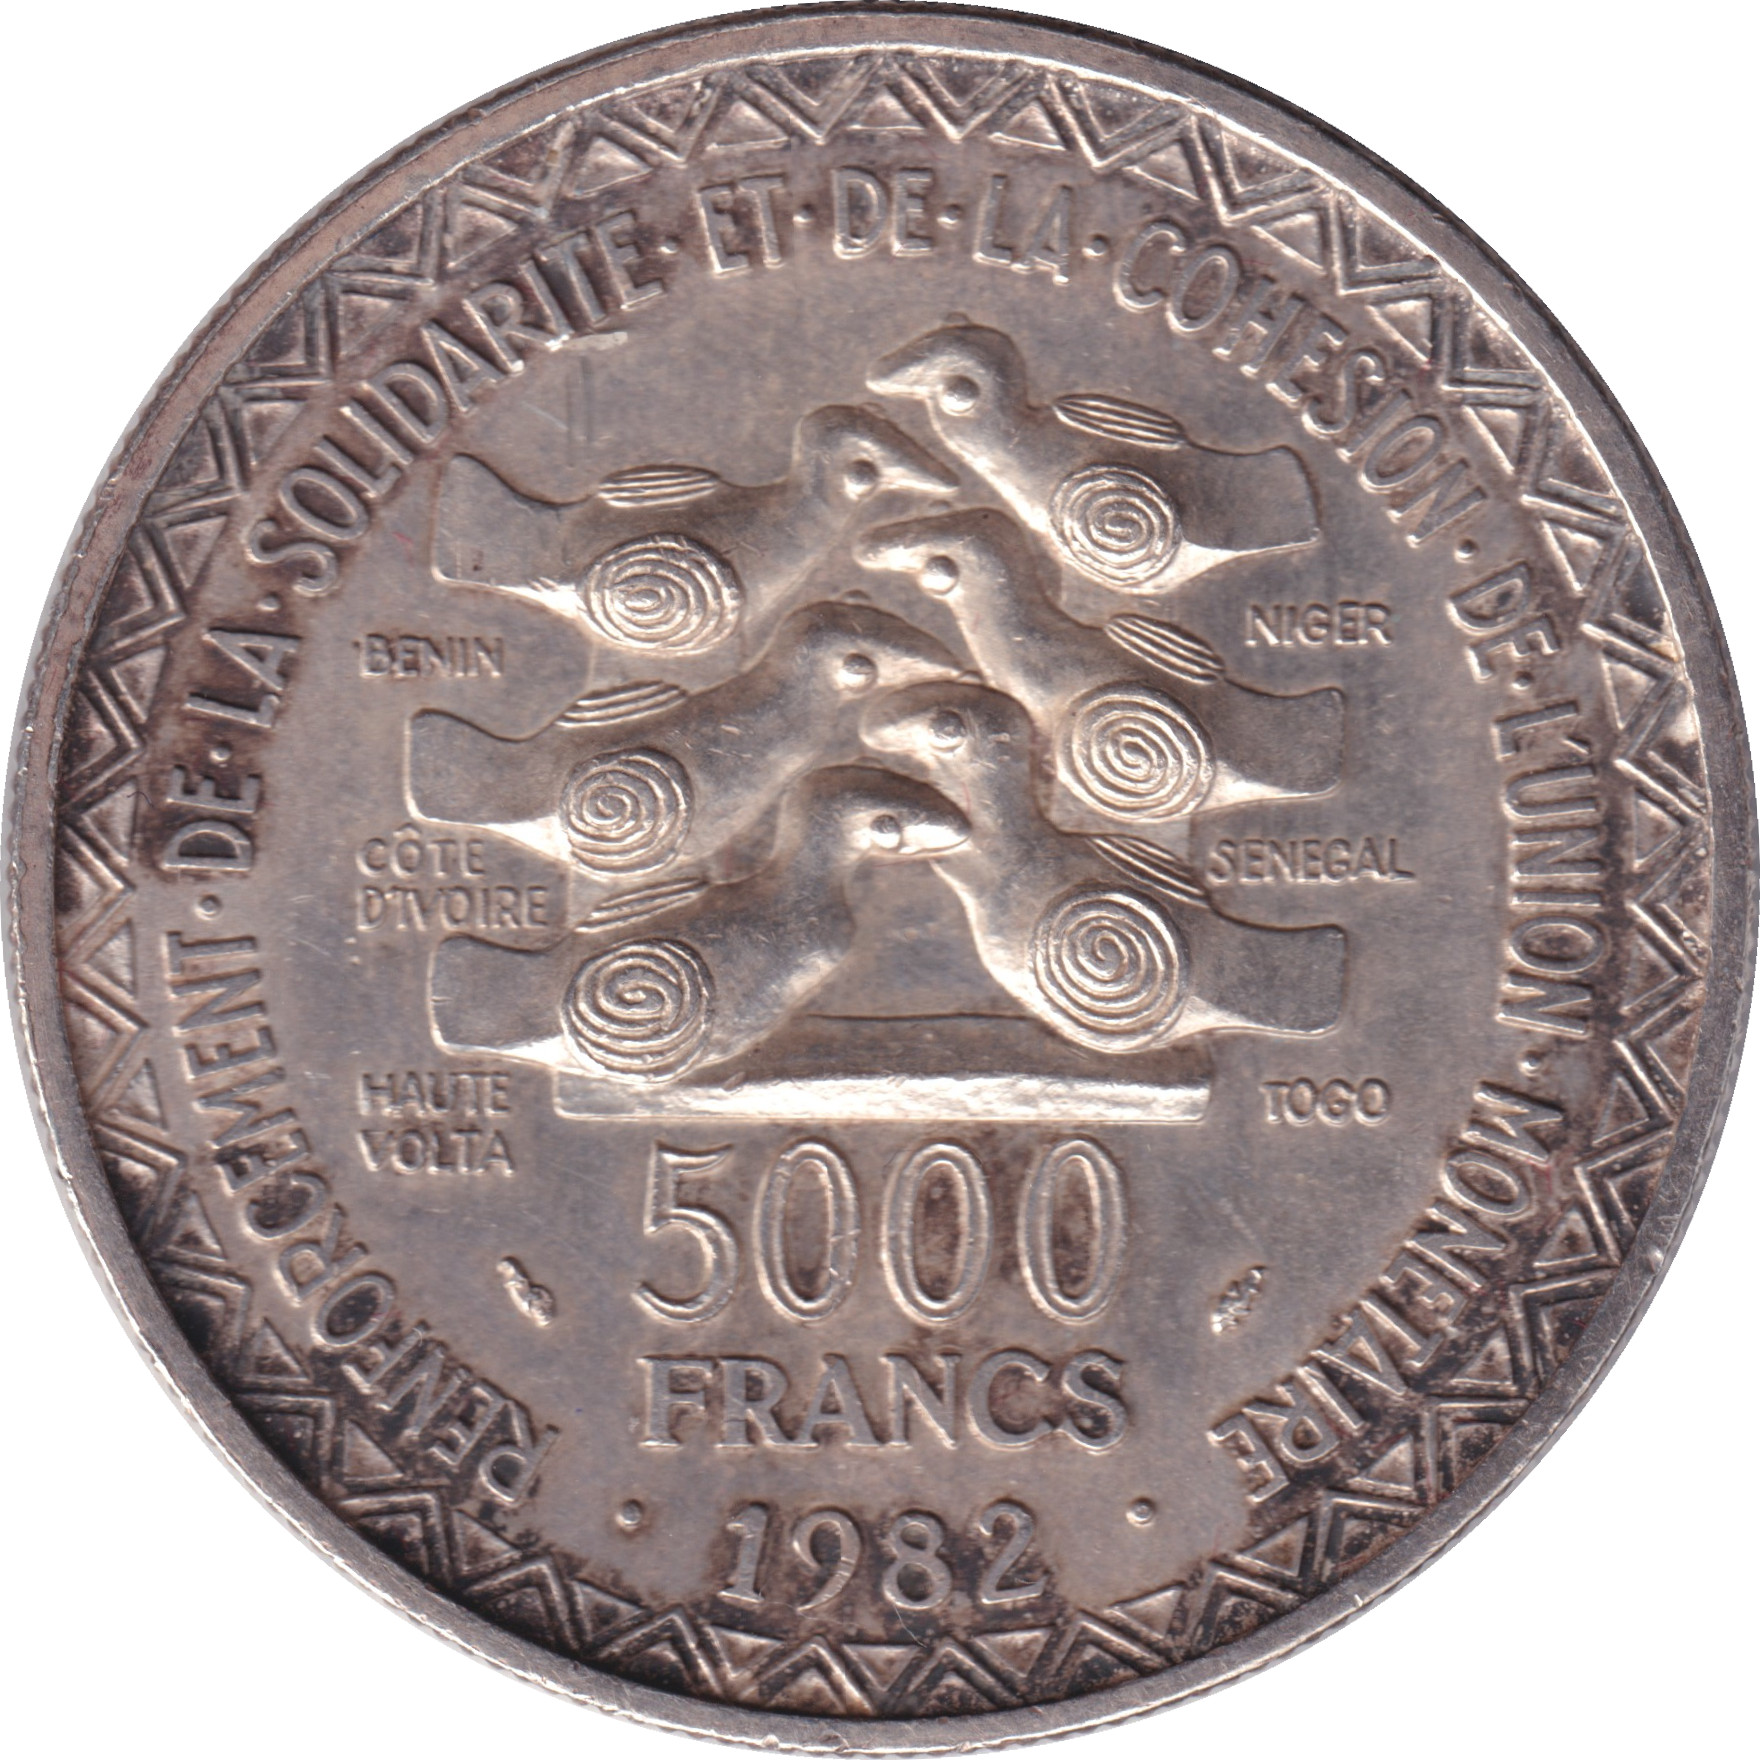 5000 francs - Union monétaire - 20 years